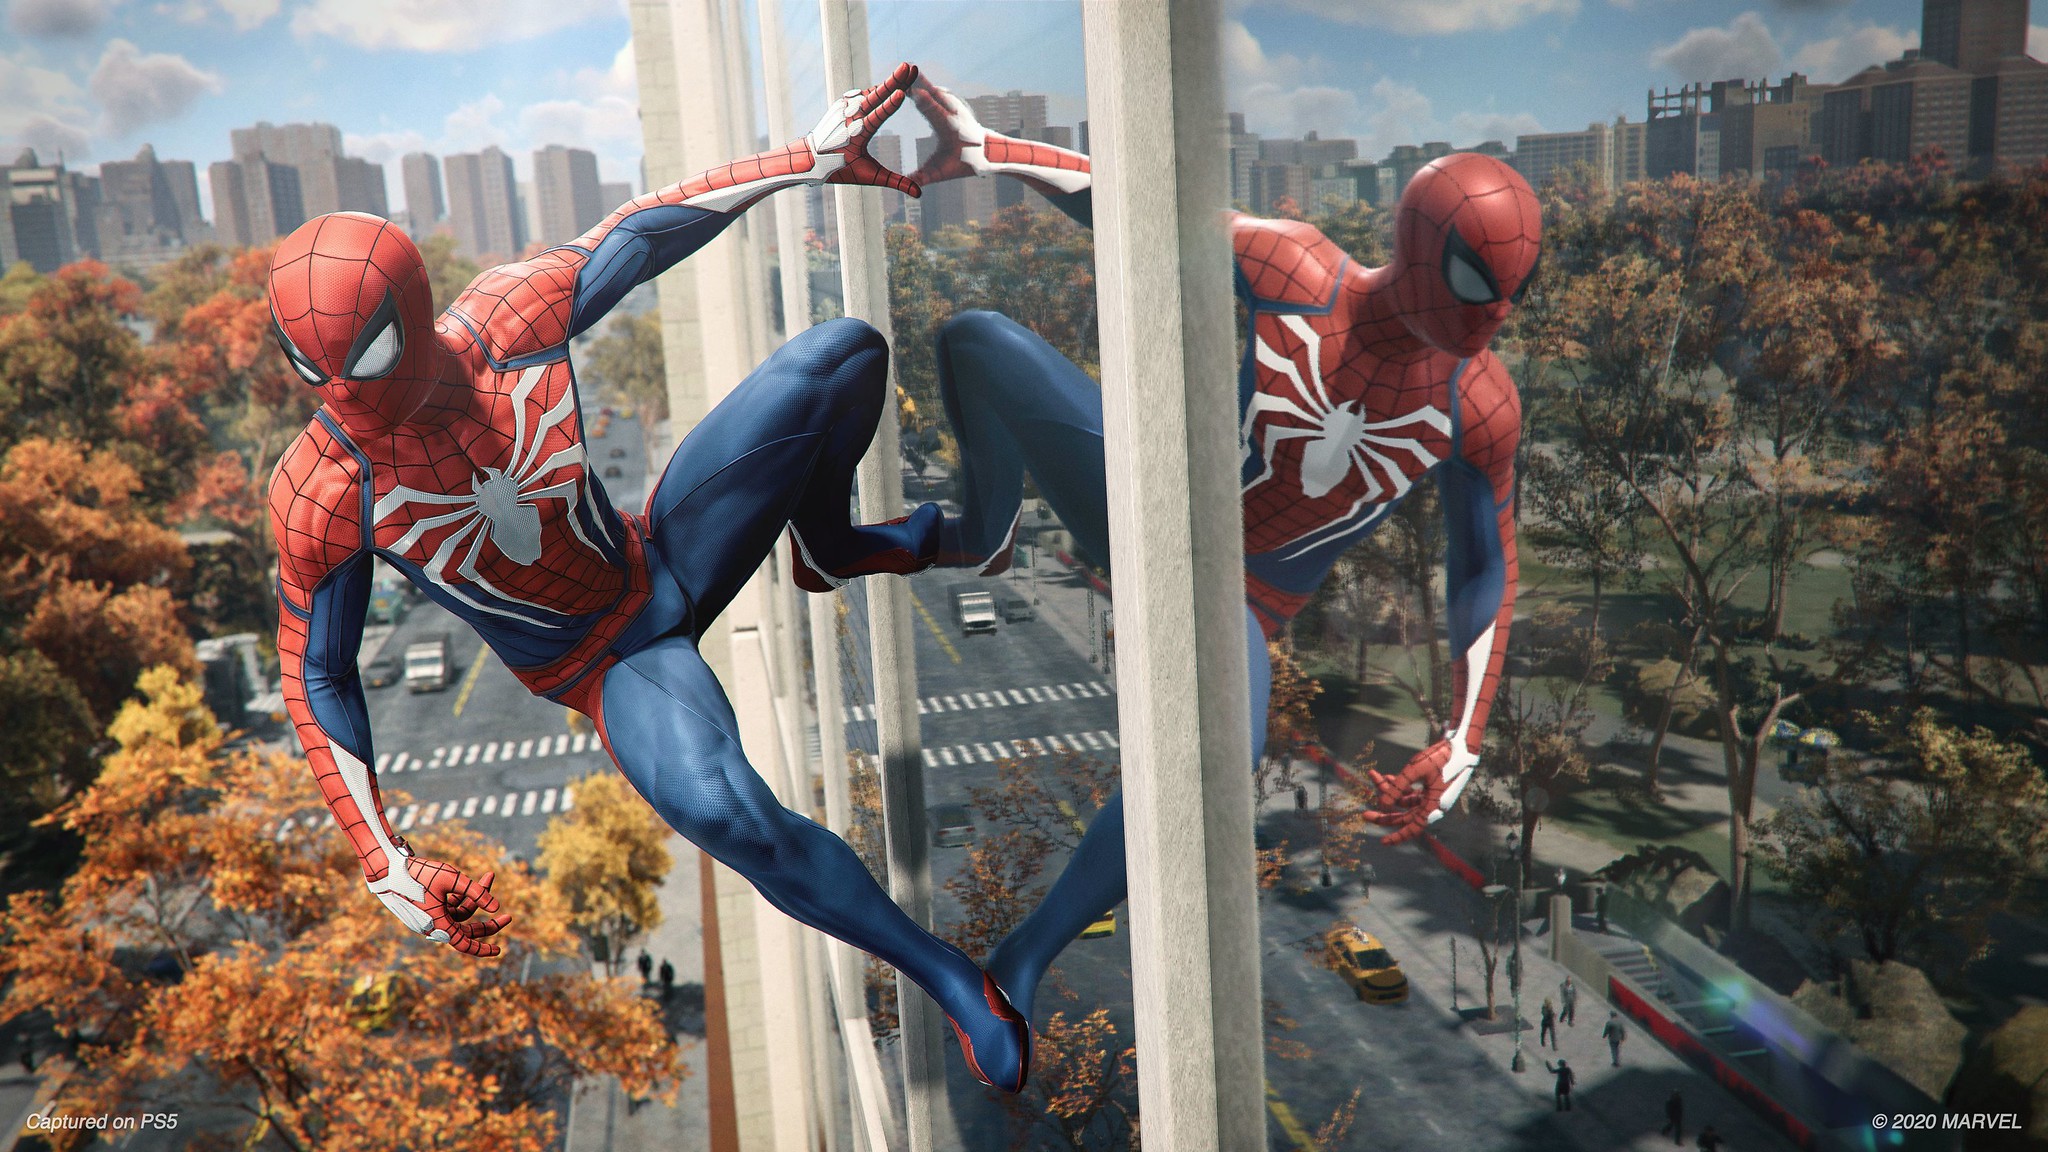 Marvel's Spider-Man: Liberadas imagens do game do PS4 com vários vilões!